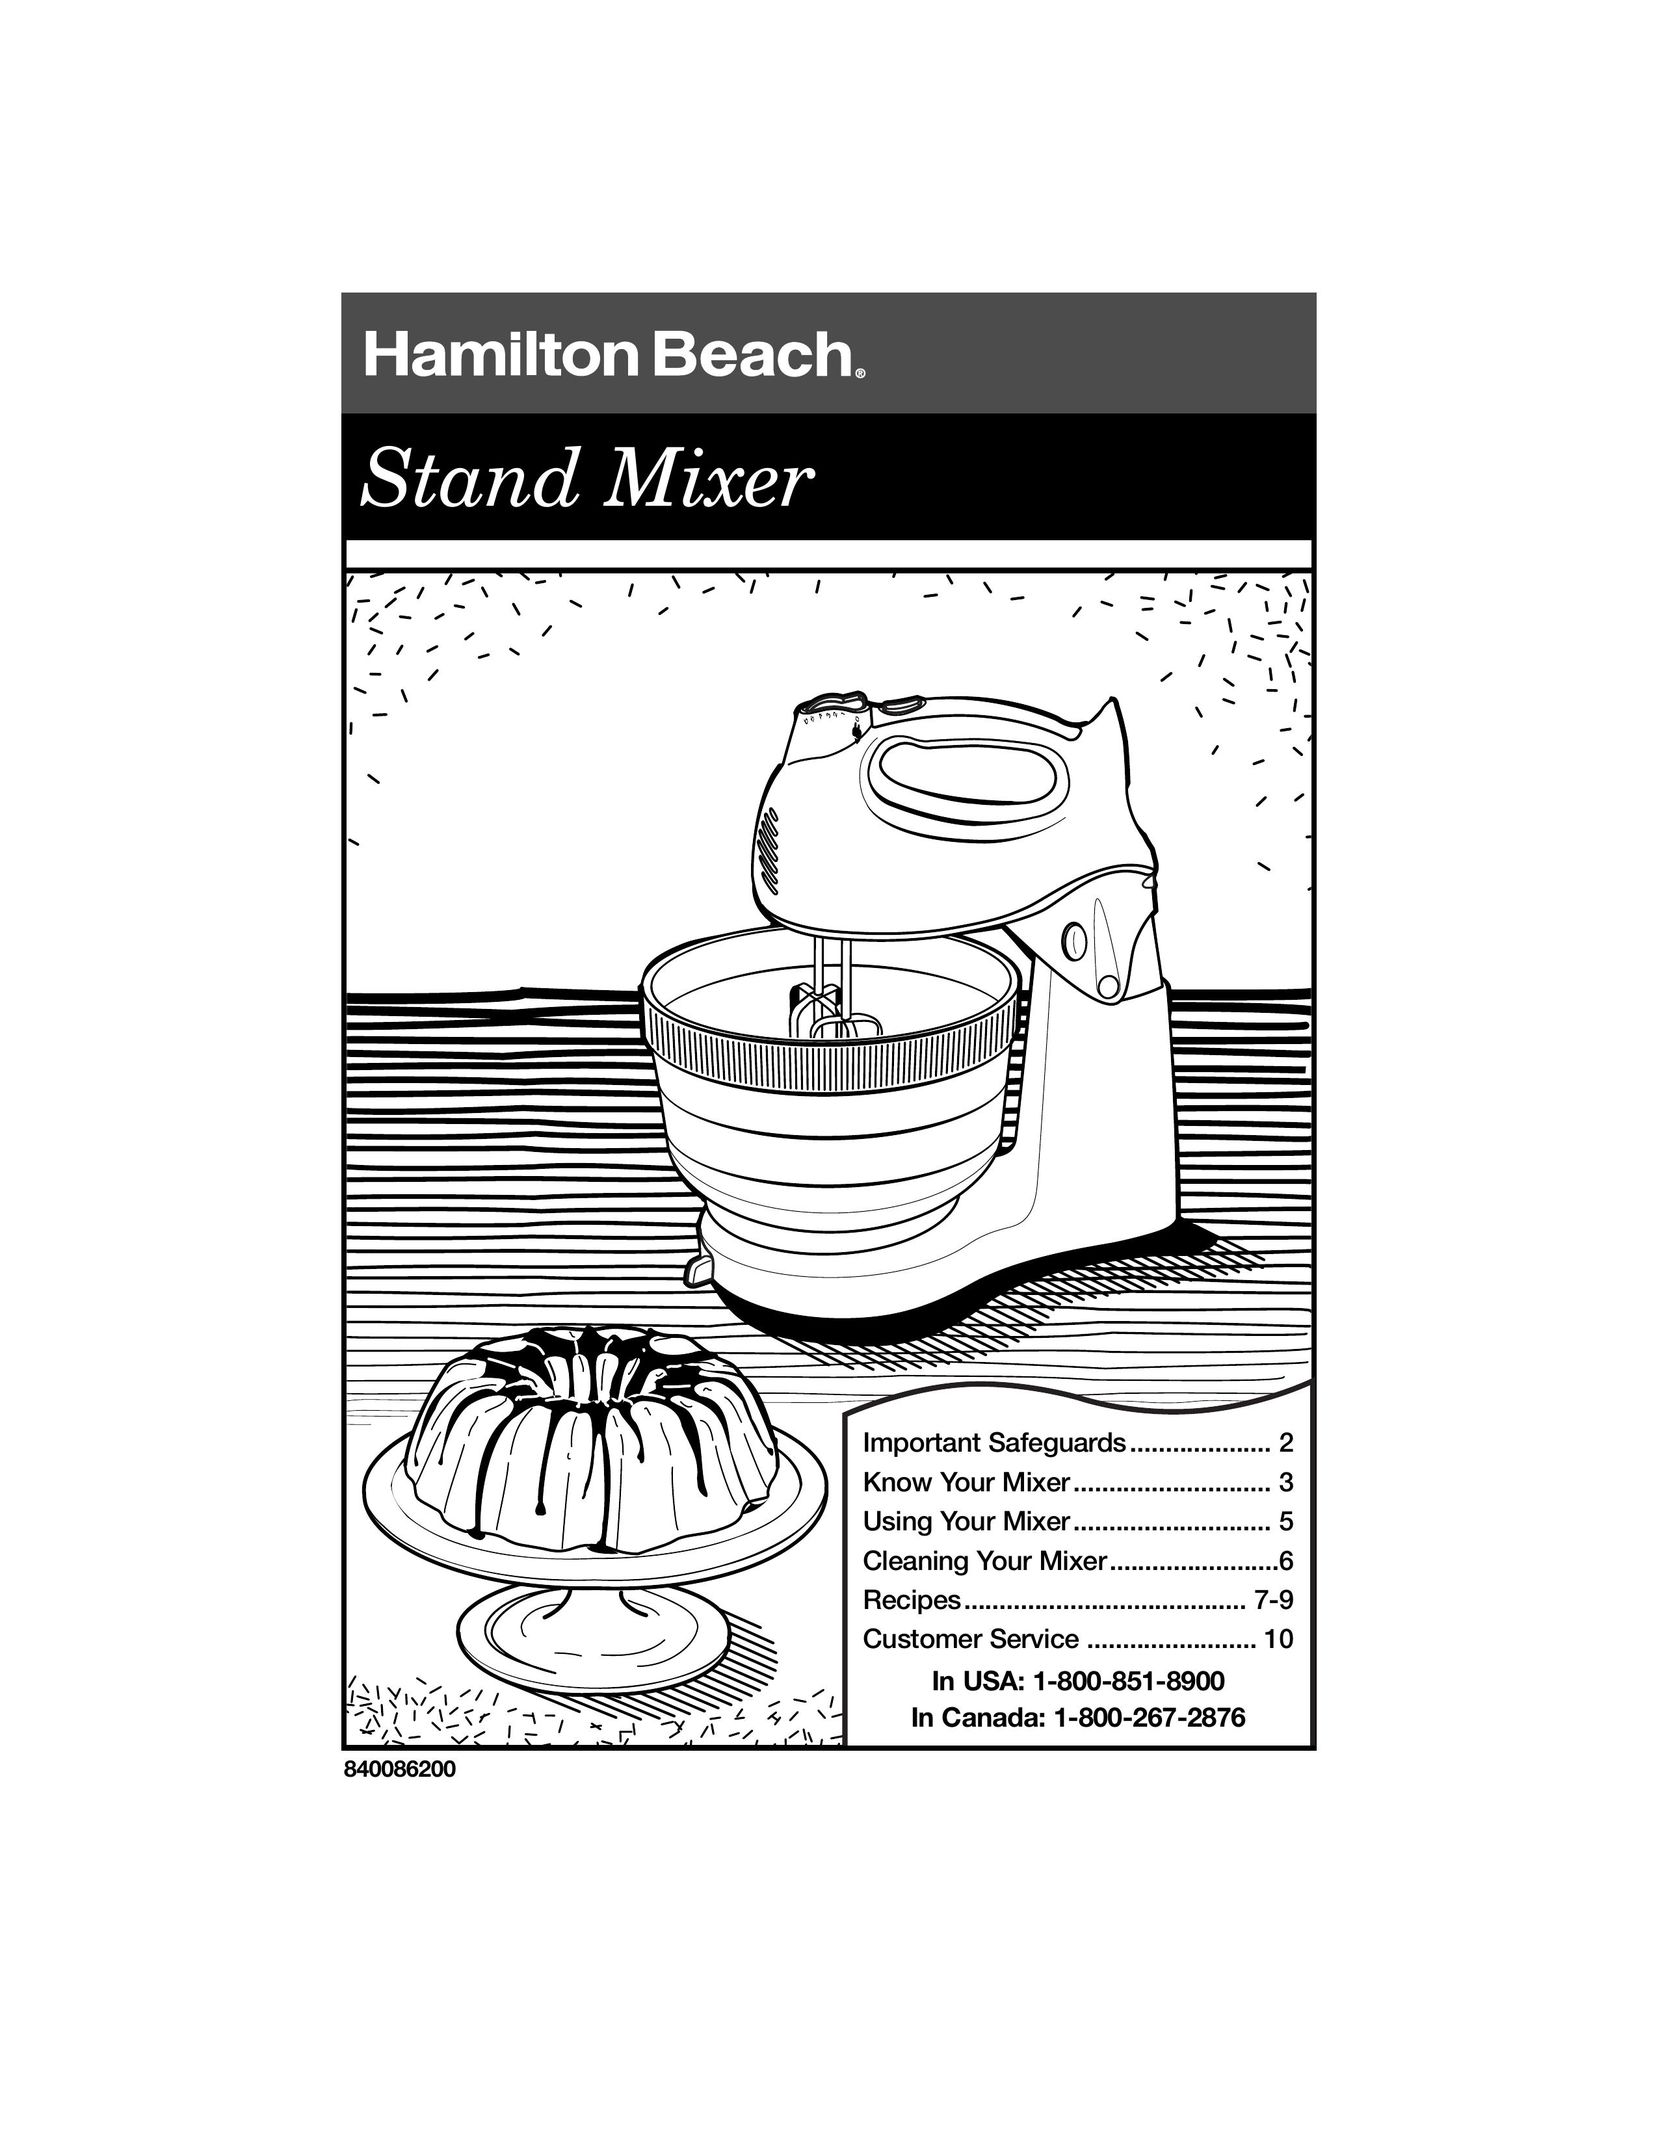 Hamilton Beach 840086200 Mixer User Manual